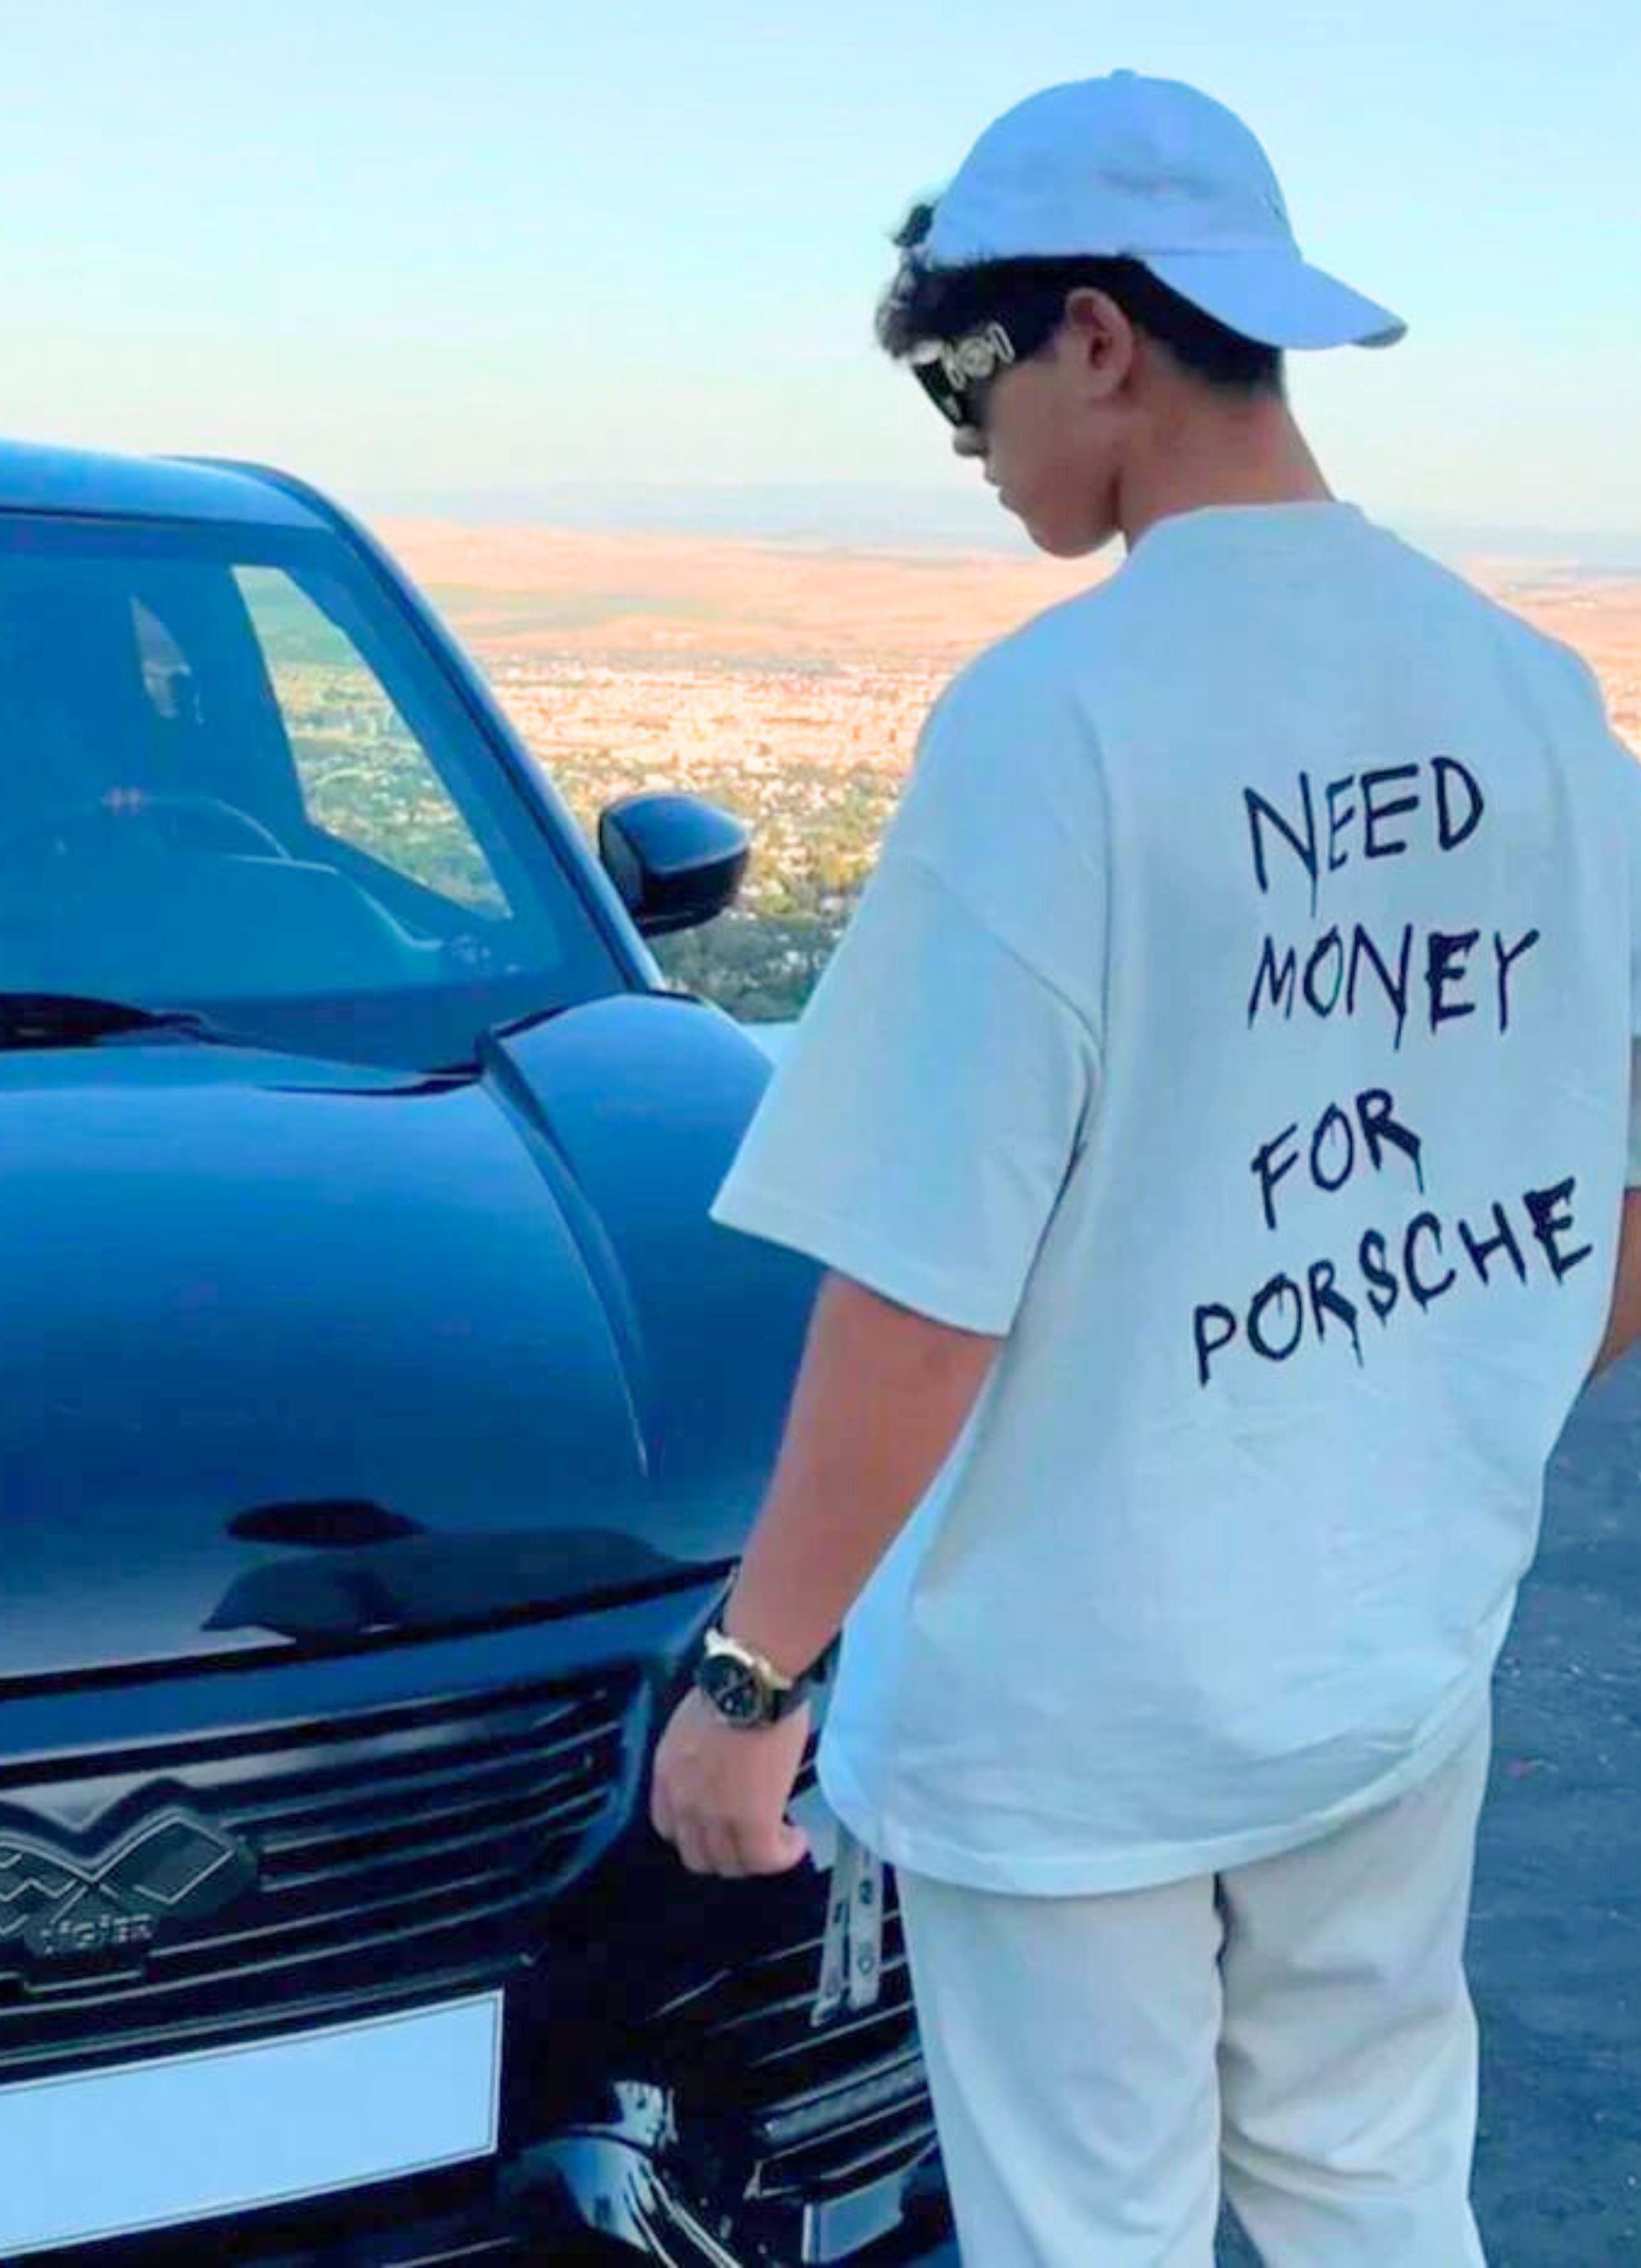 Need Money For Porsche White Back Oversized T-Shirt